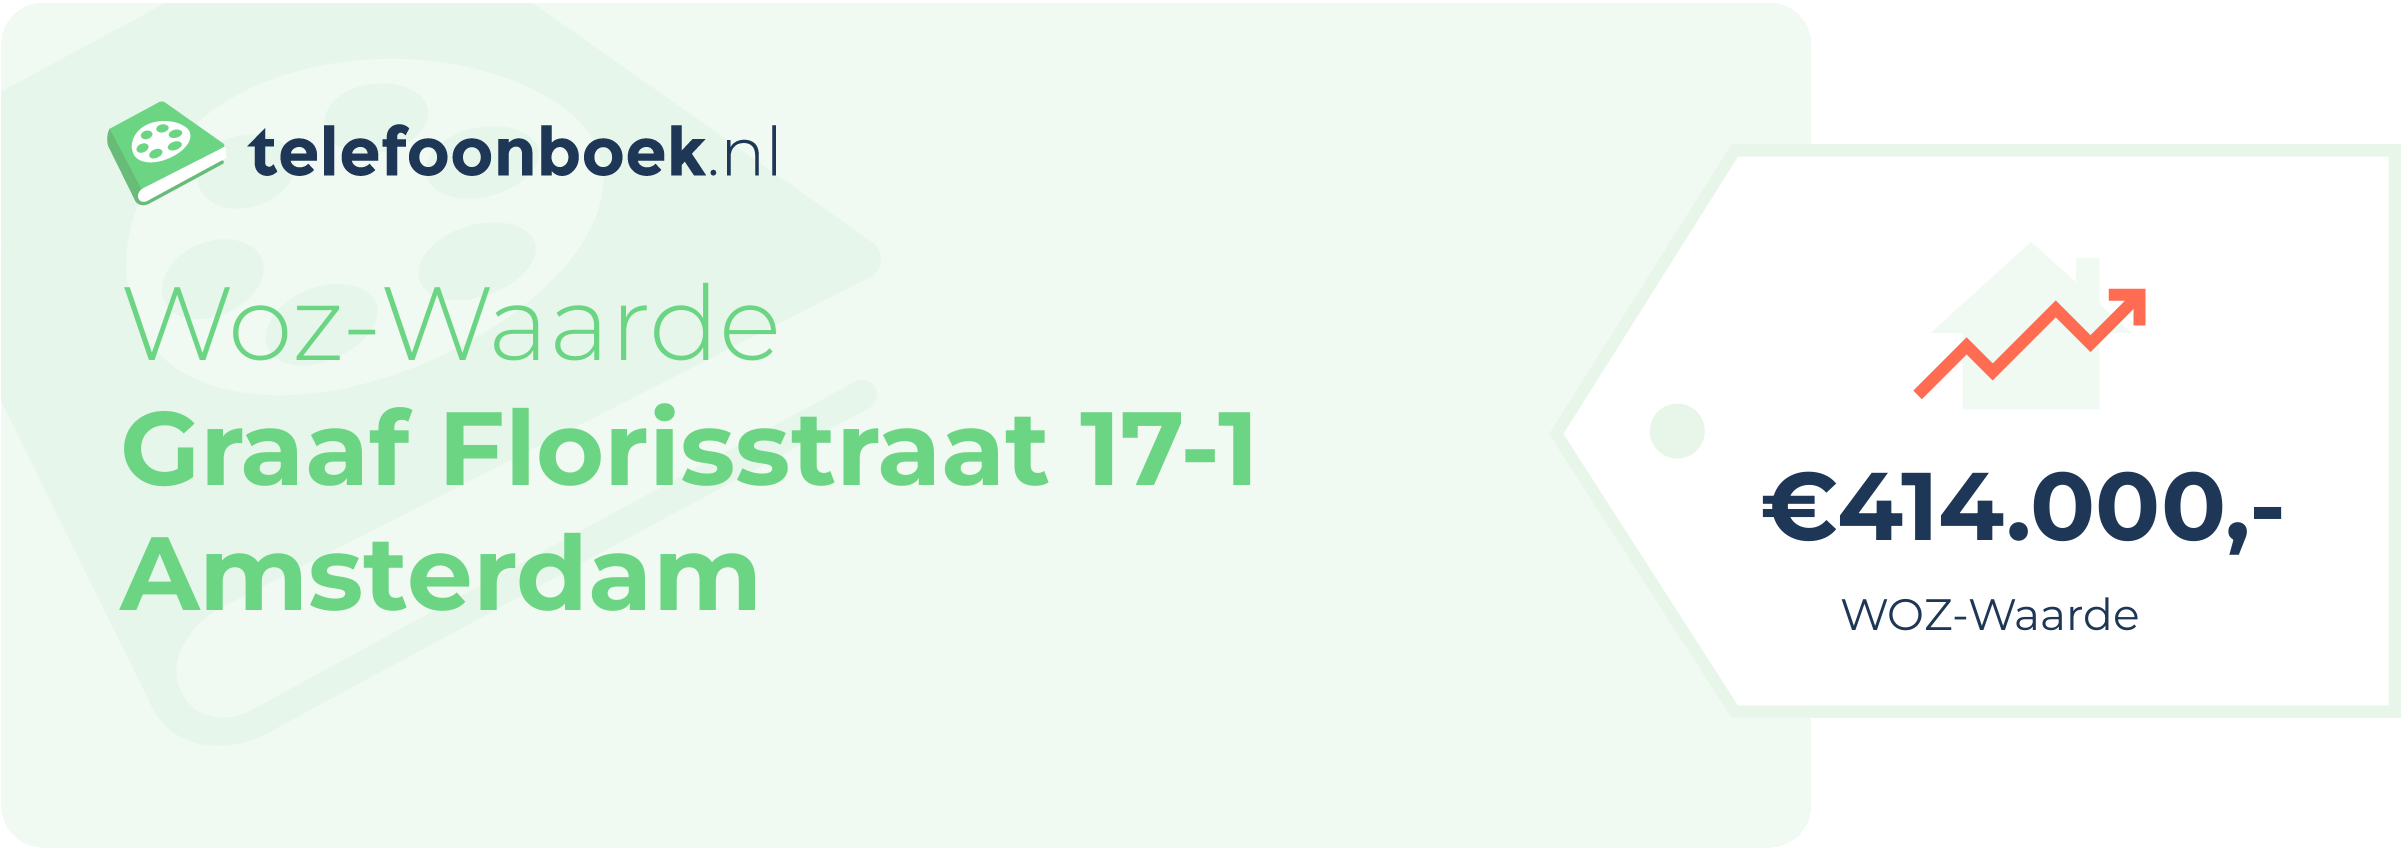 WOZ-waarde Graaf Florisstraat 17-1 Amsterdam